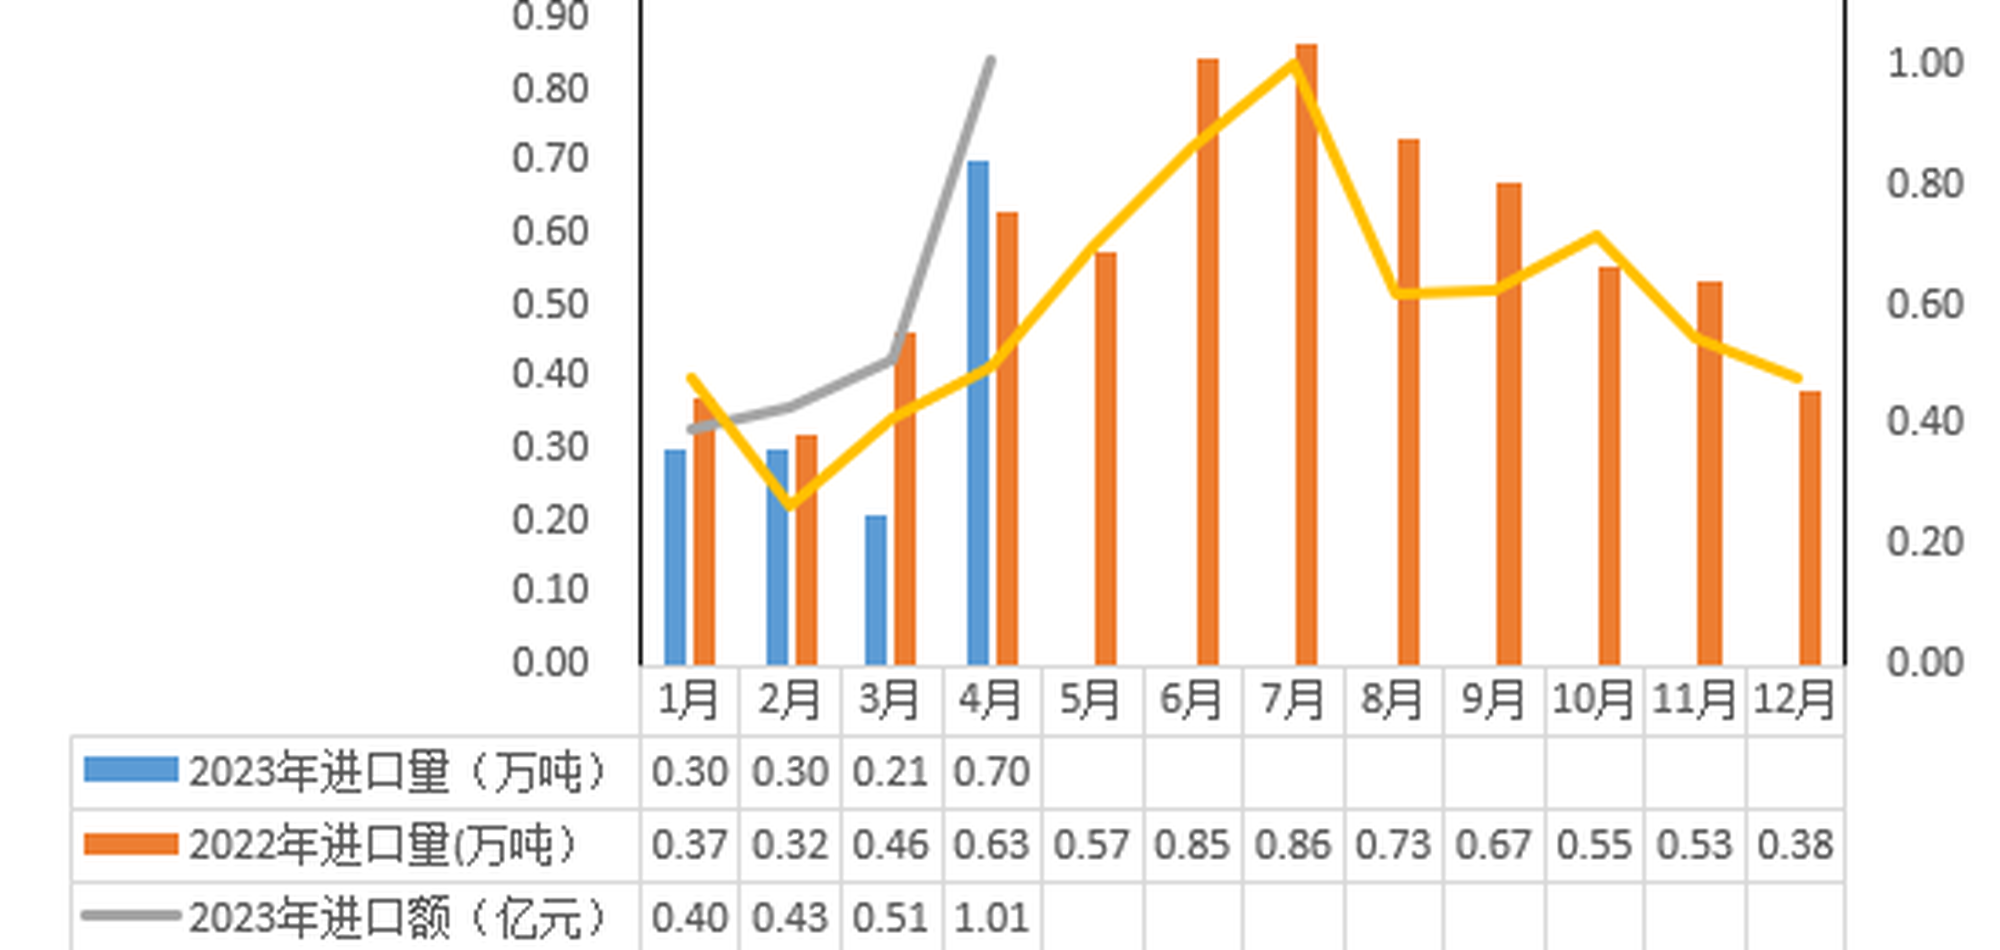 2023年4月河南省乳制品进口情况 7.21